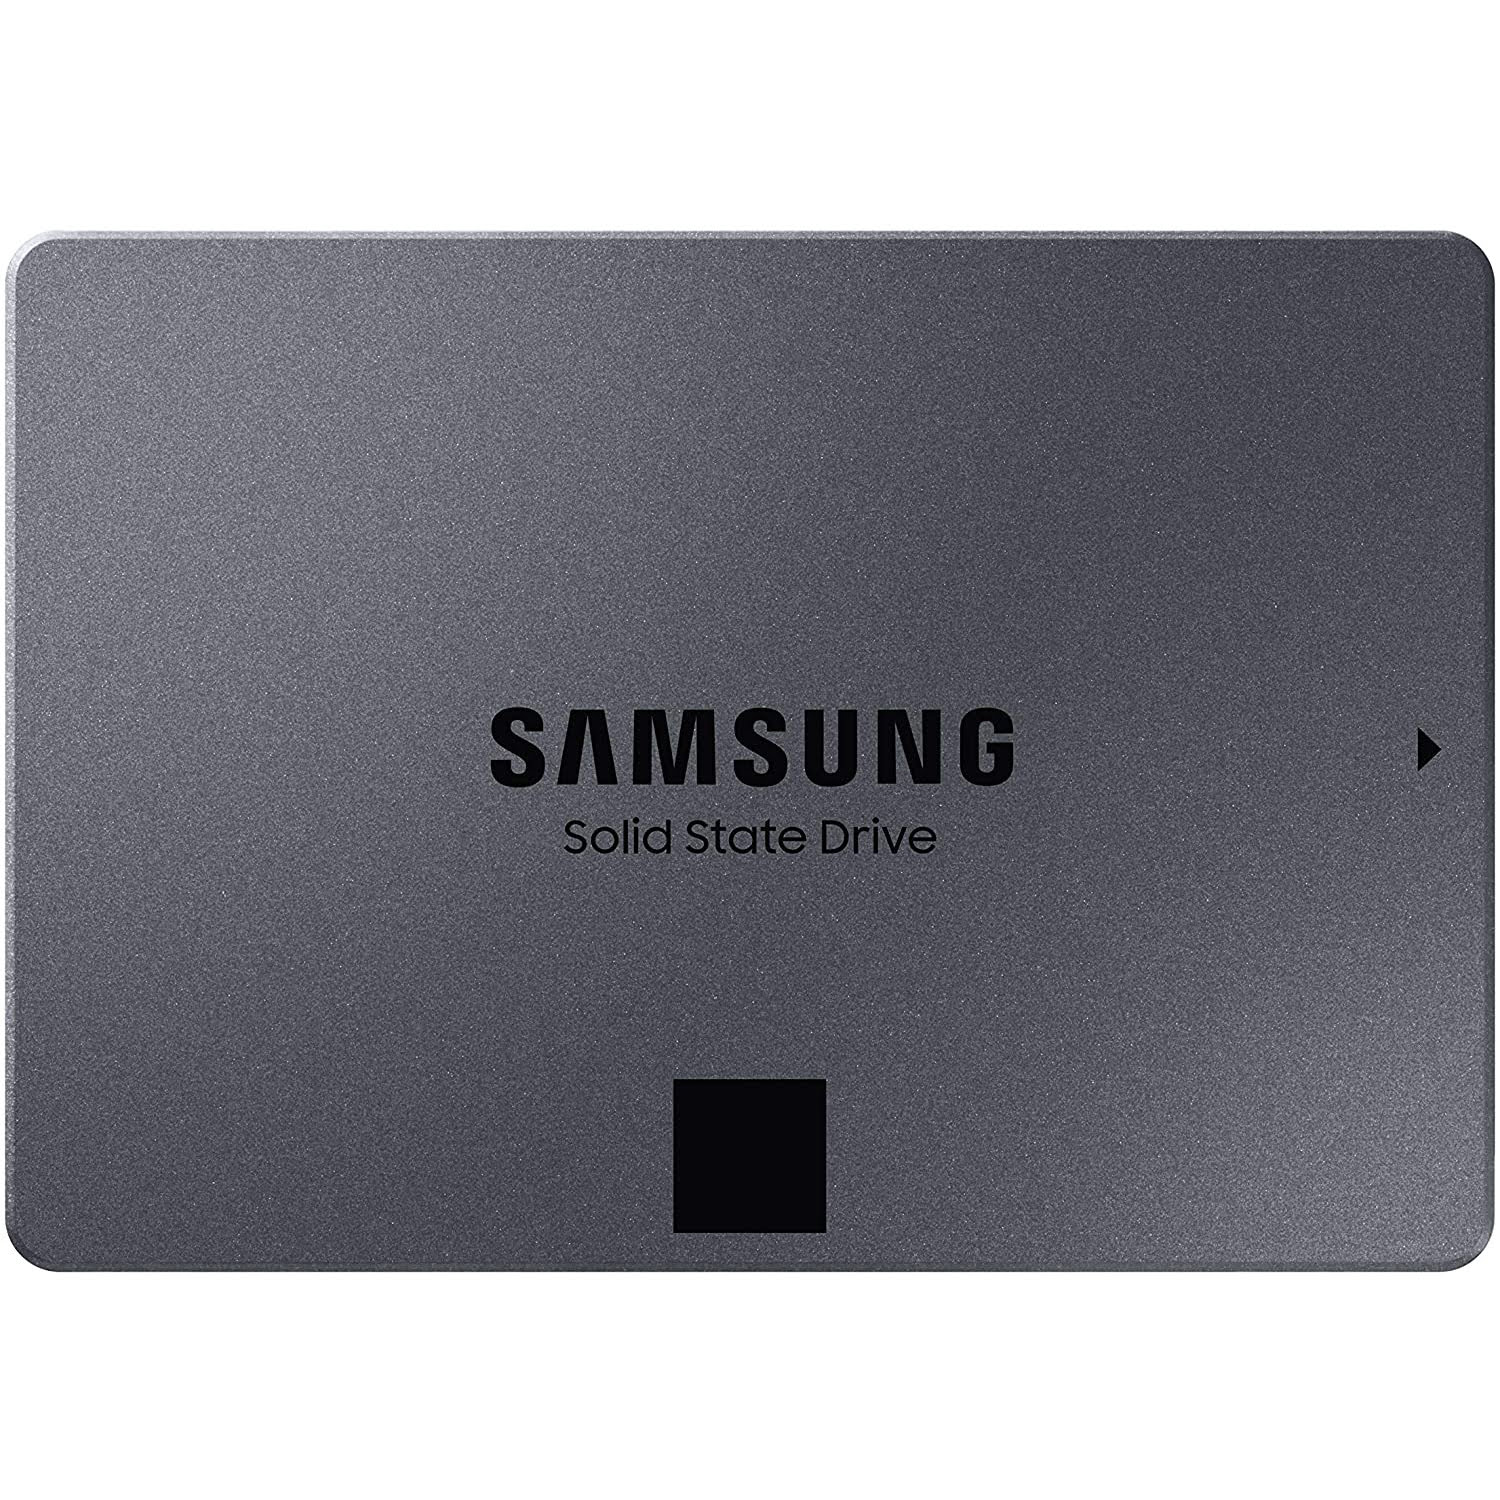 Solid-State Drive (SSD) Samsung 870 QVO, MZ-77Q8T0BW, SATA III, 2.5", 8TB, Grey